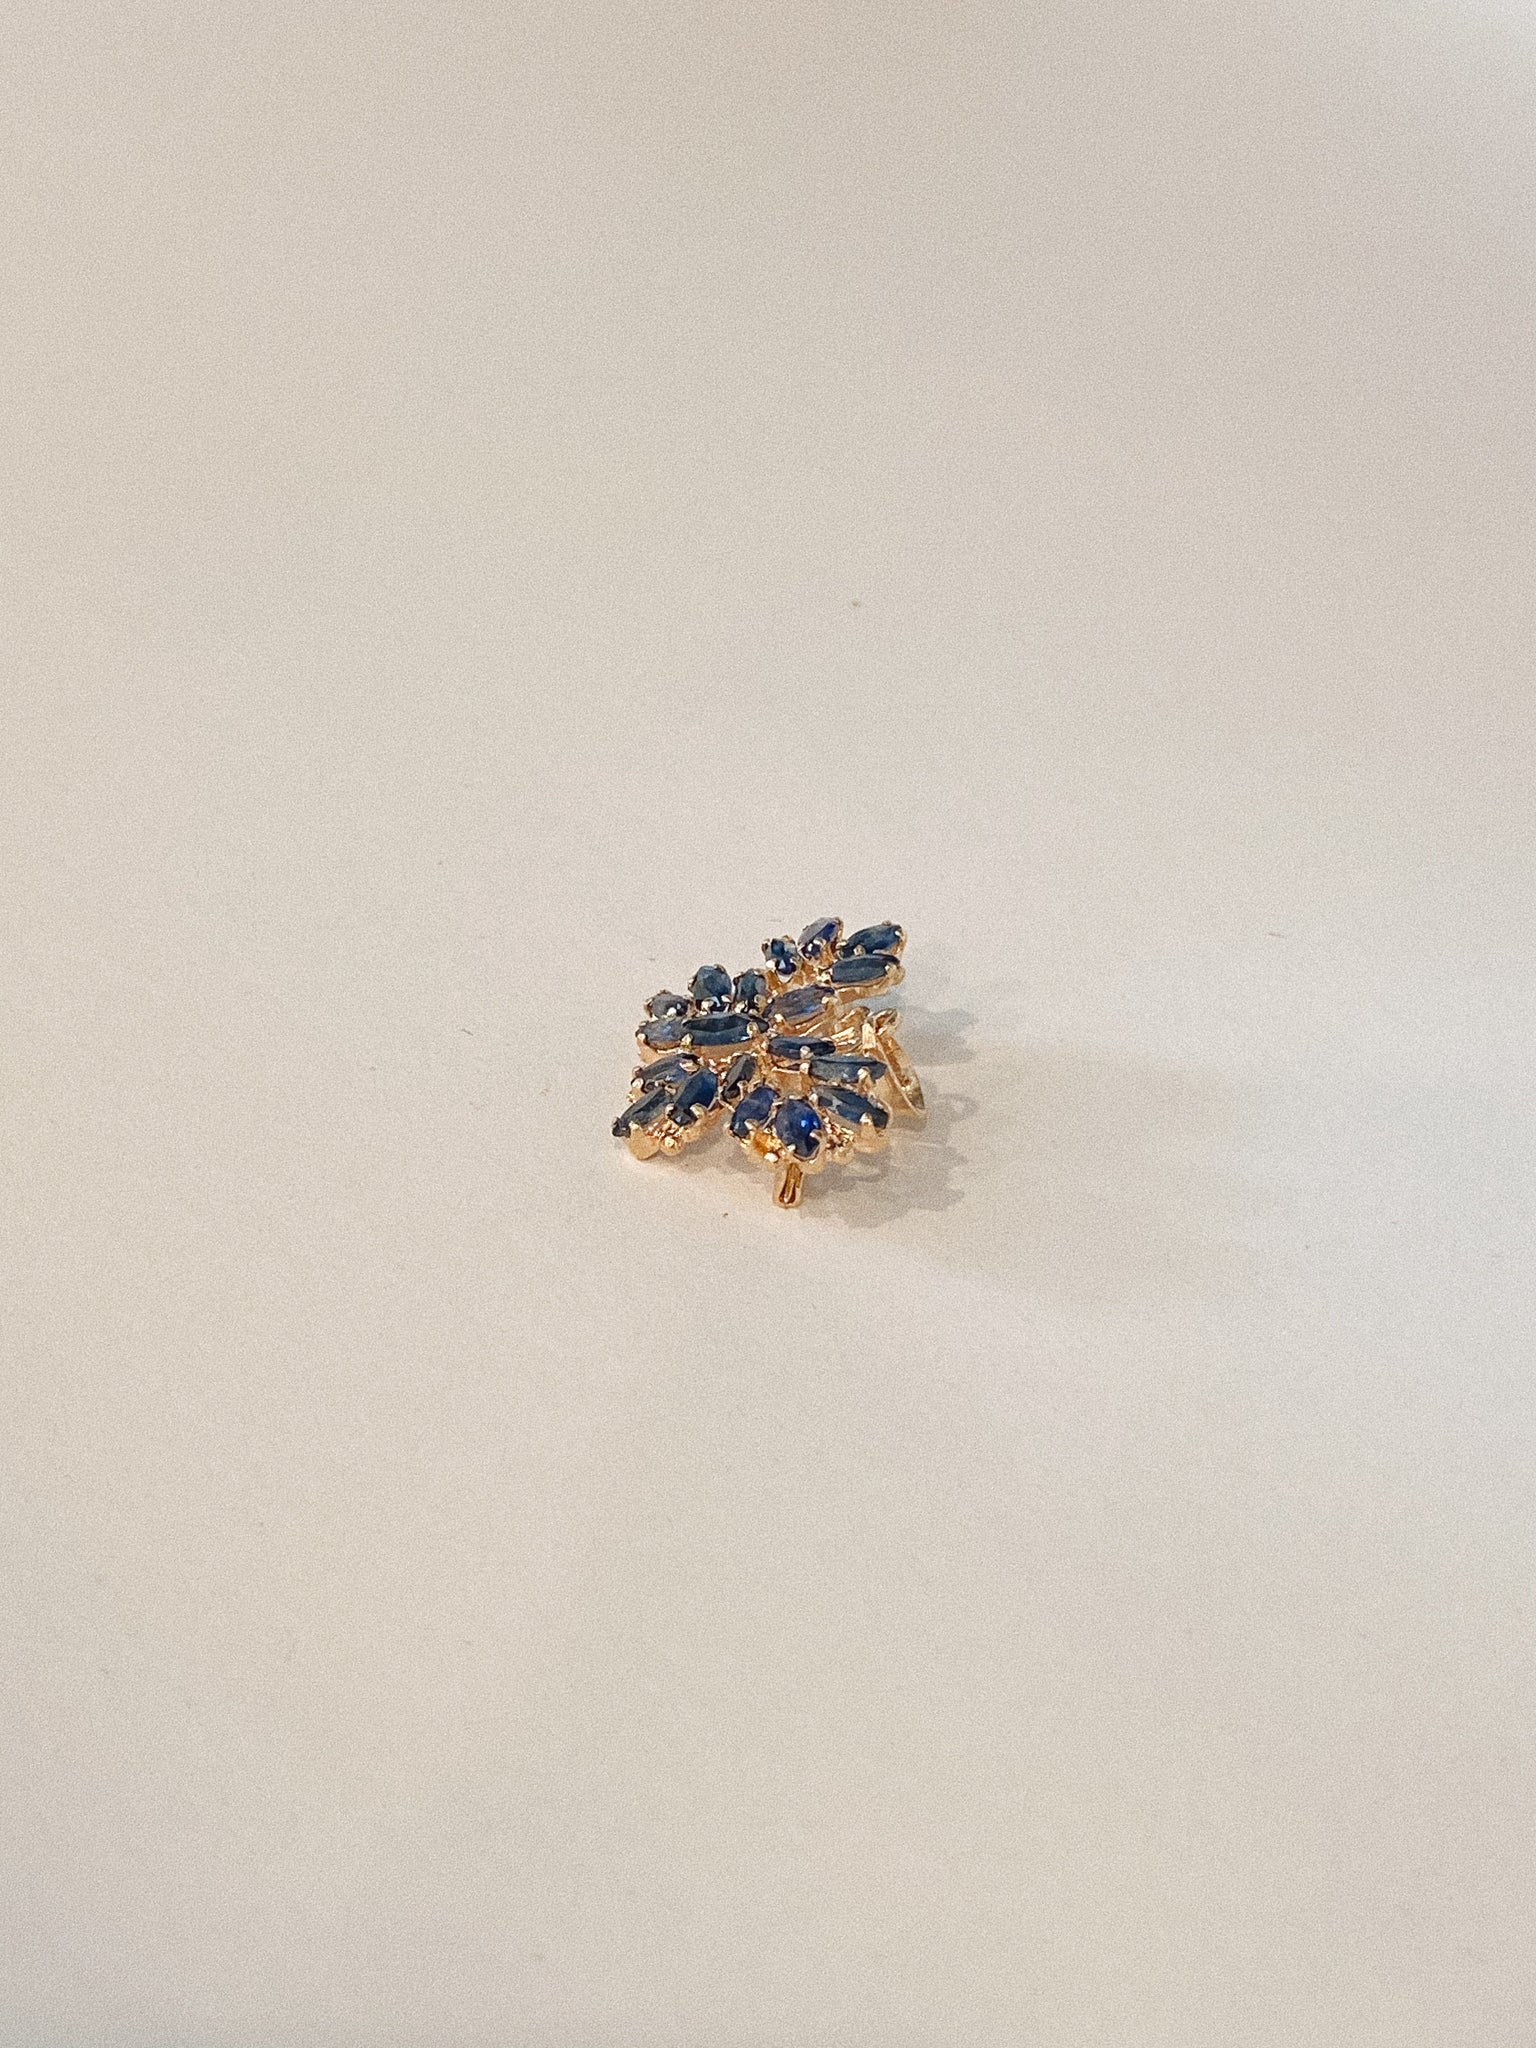 Sapphire Butterfly Pendant/Brooch